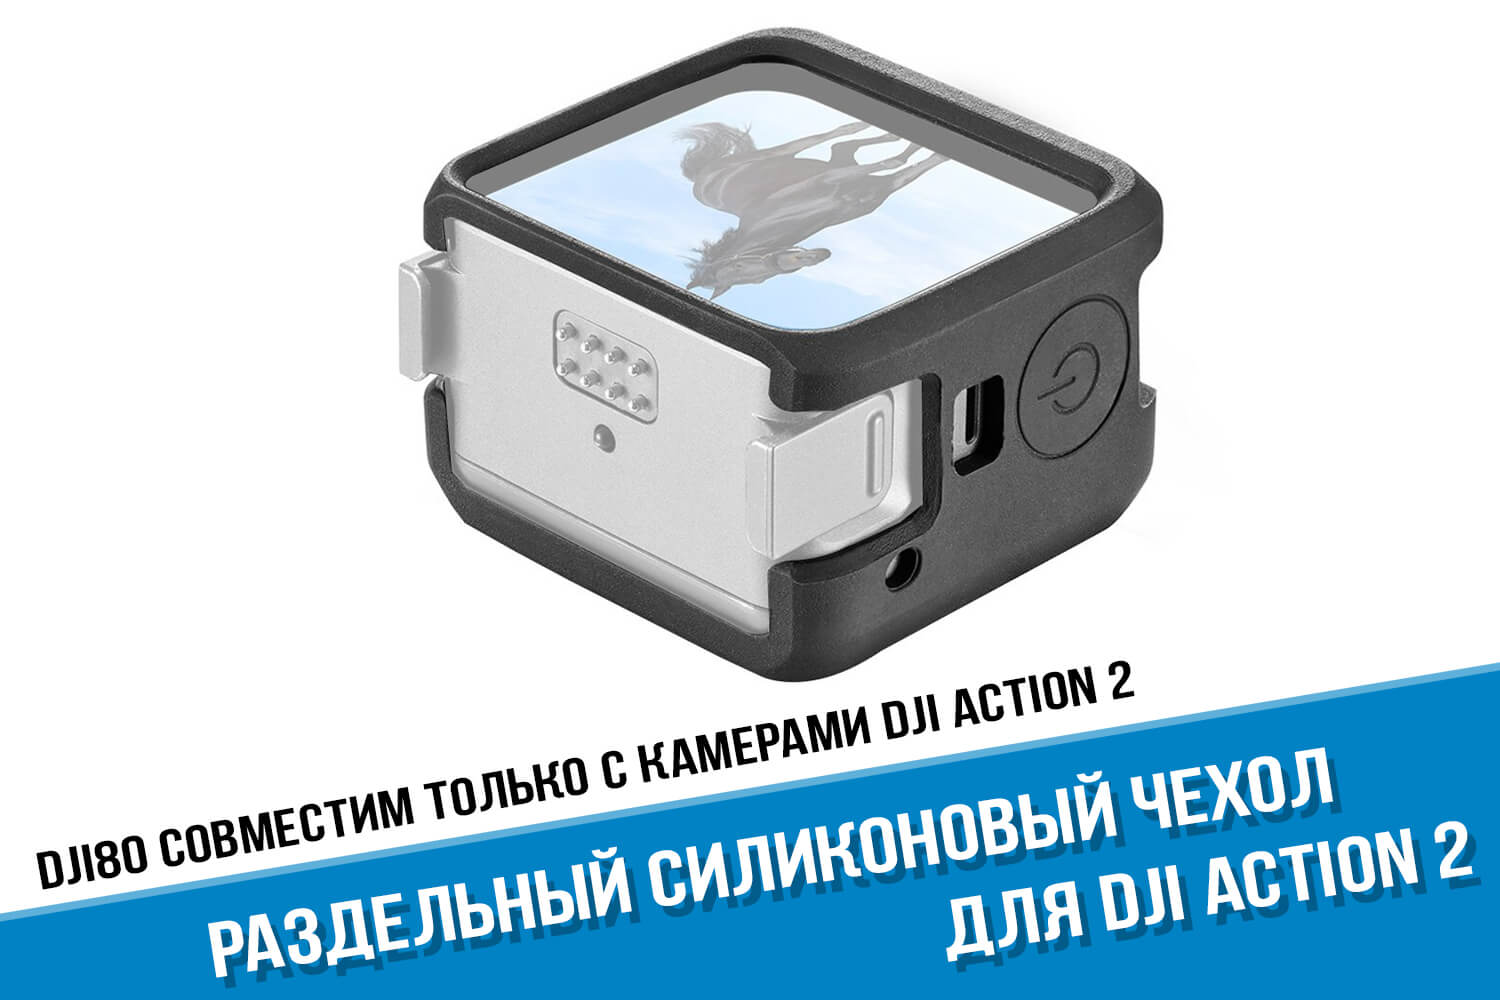 Раздельный силиконовый чехол камеры DJI Action 2